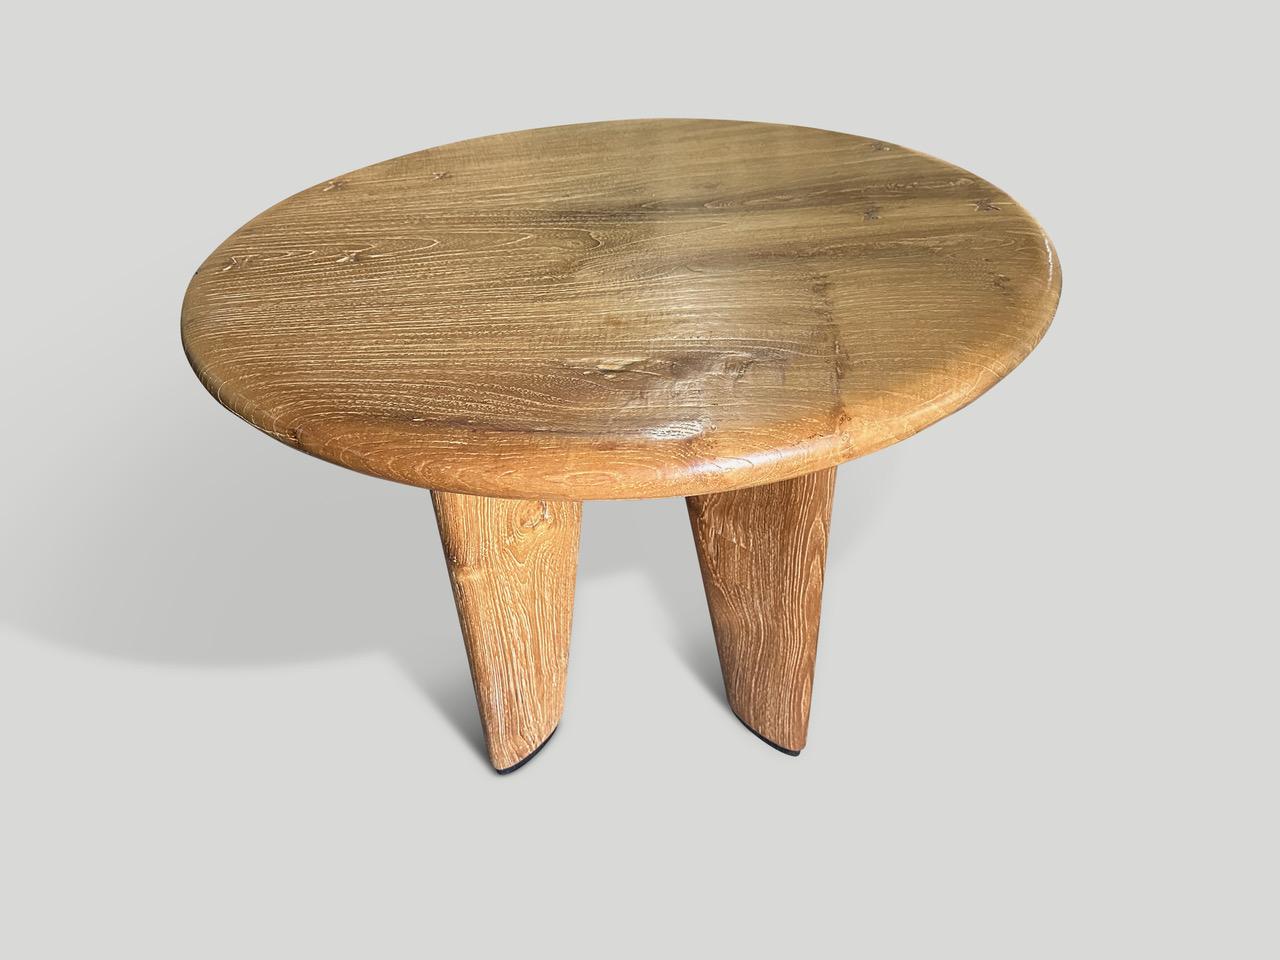 Eine beeindruckende, jahrhundertealte Platte aus Teakholz, die aus meiner besten Sammlung stammt, wird von Hand geschnitzt, um diesen exquisiten Tisch mit einer tief abgeschrägten Platte herzustellen. Wir haben in das Holz eingelegte Schmetterlinge